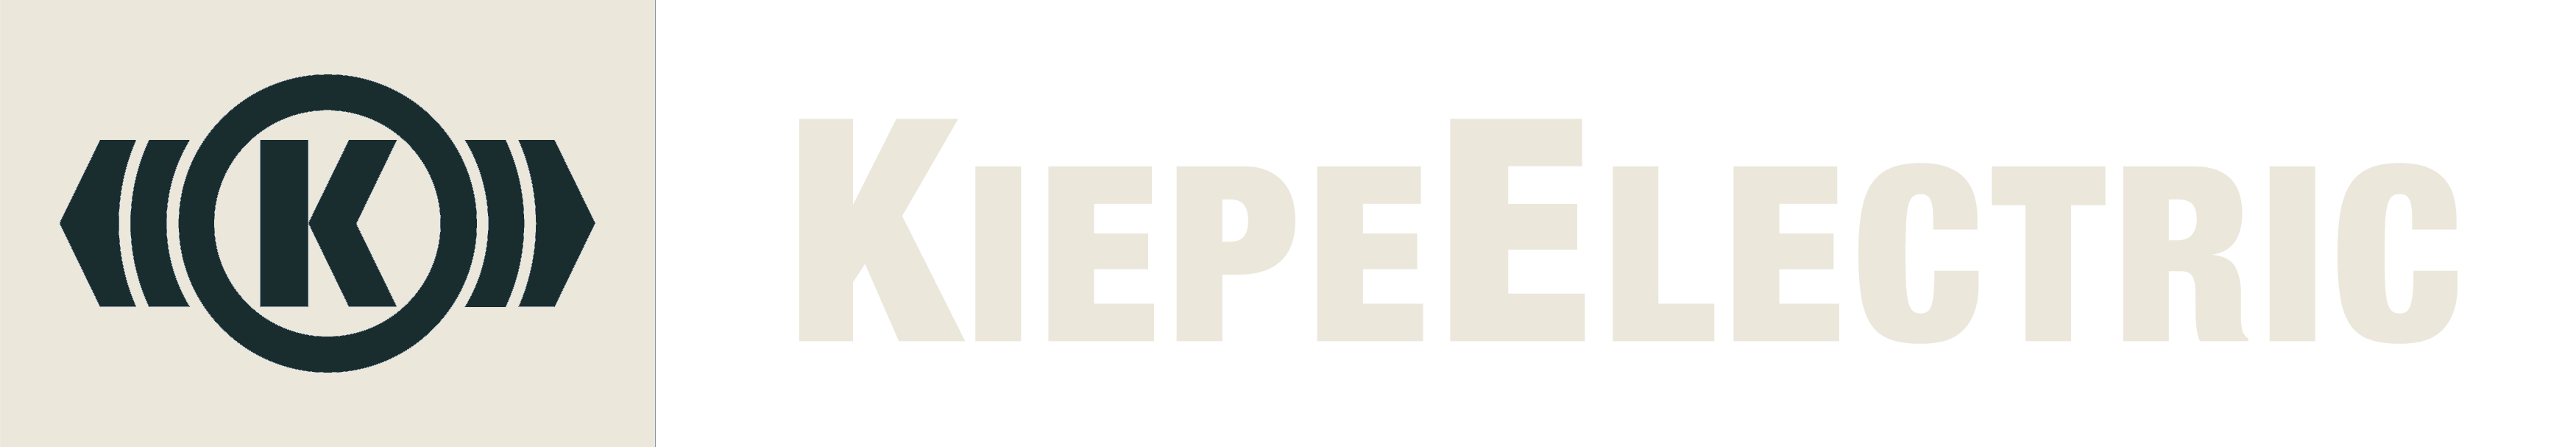 Kiepe adapted